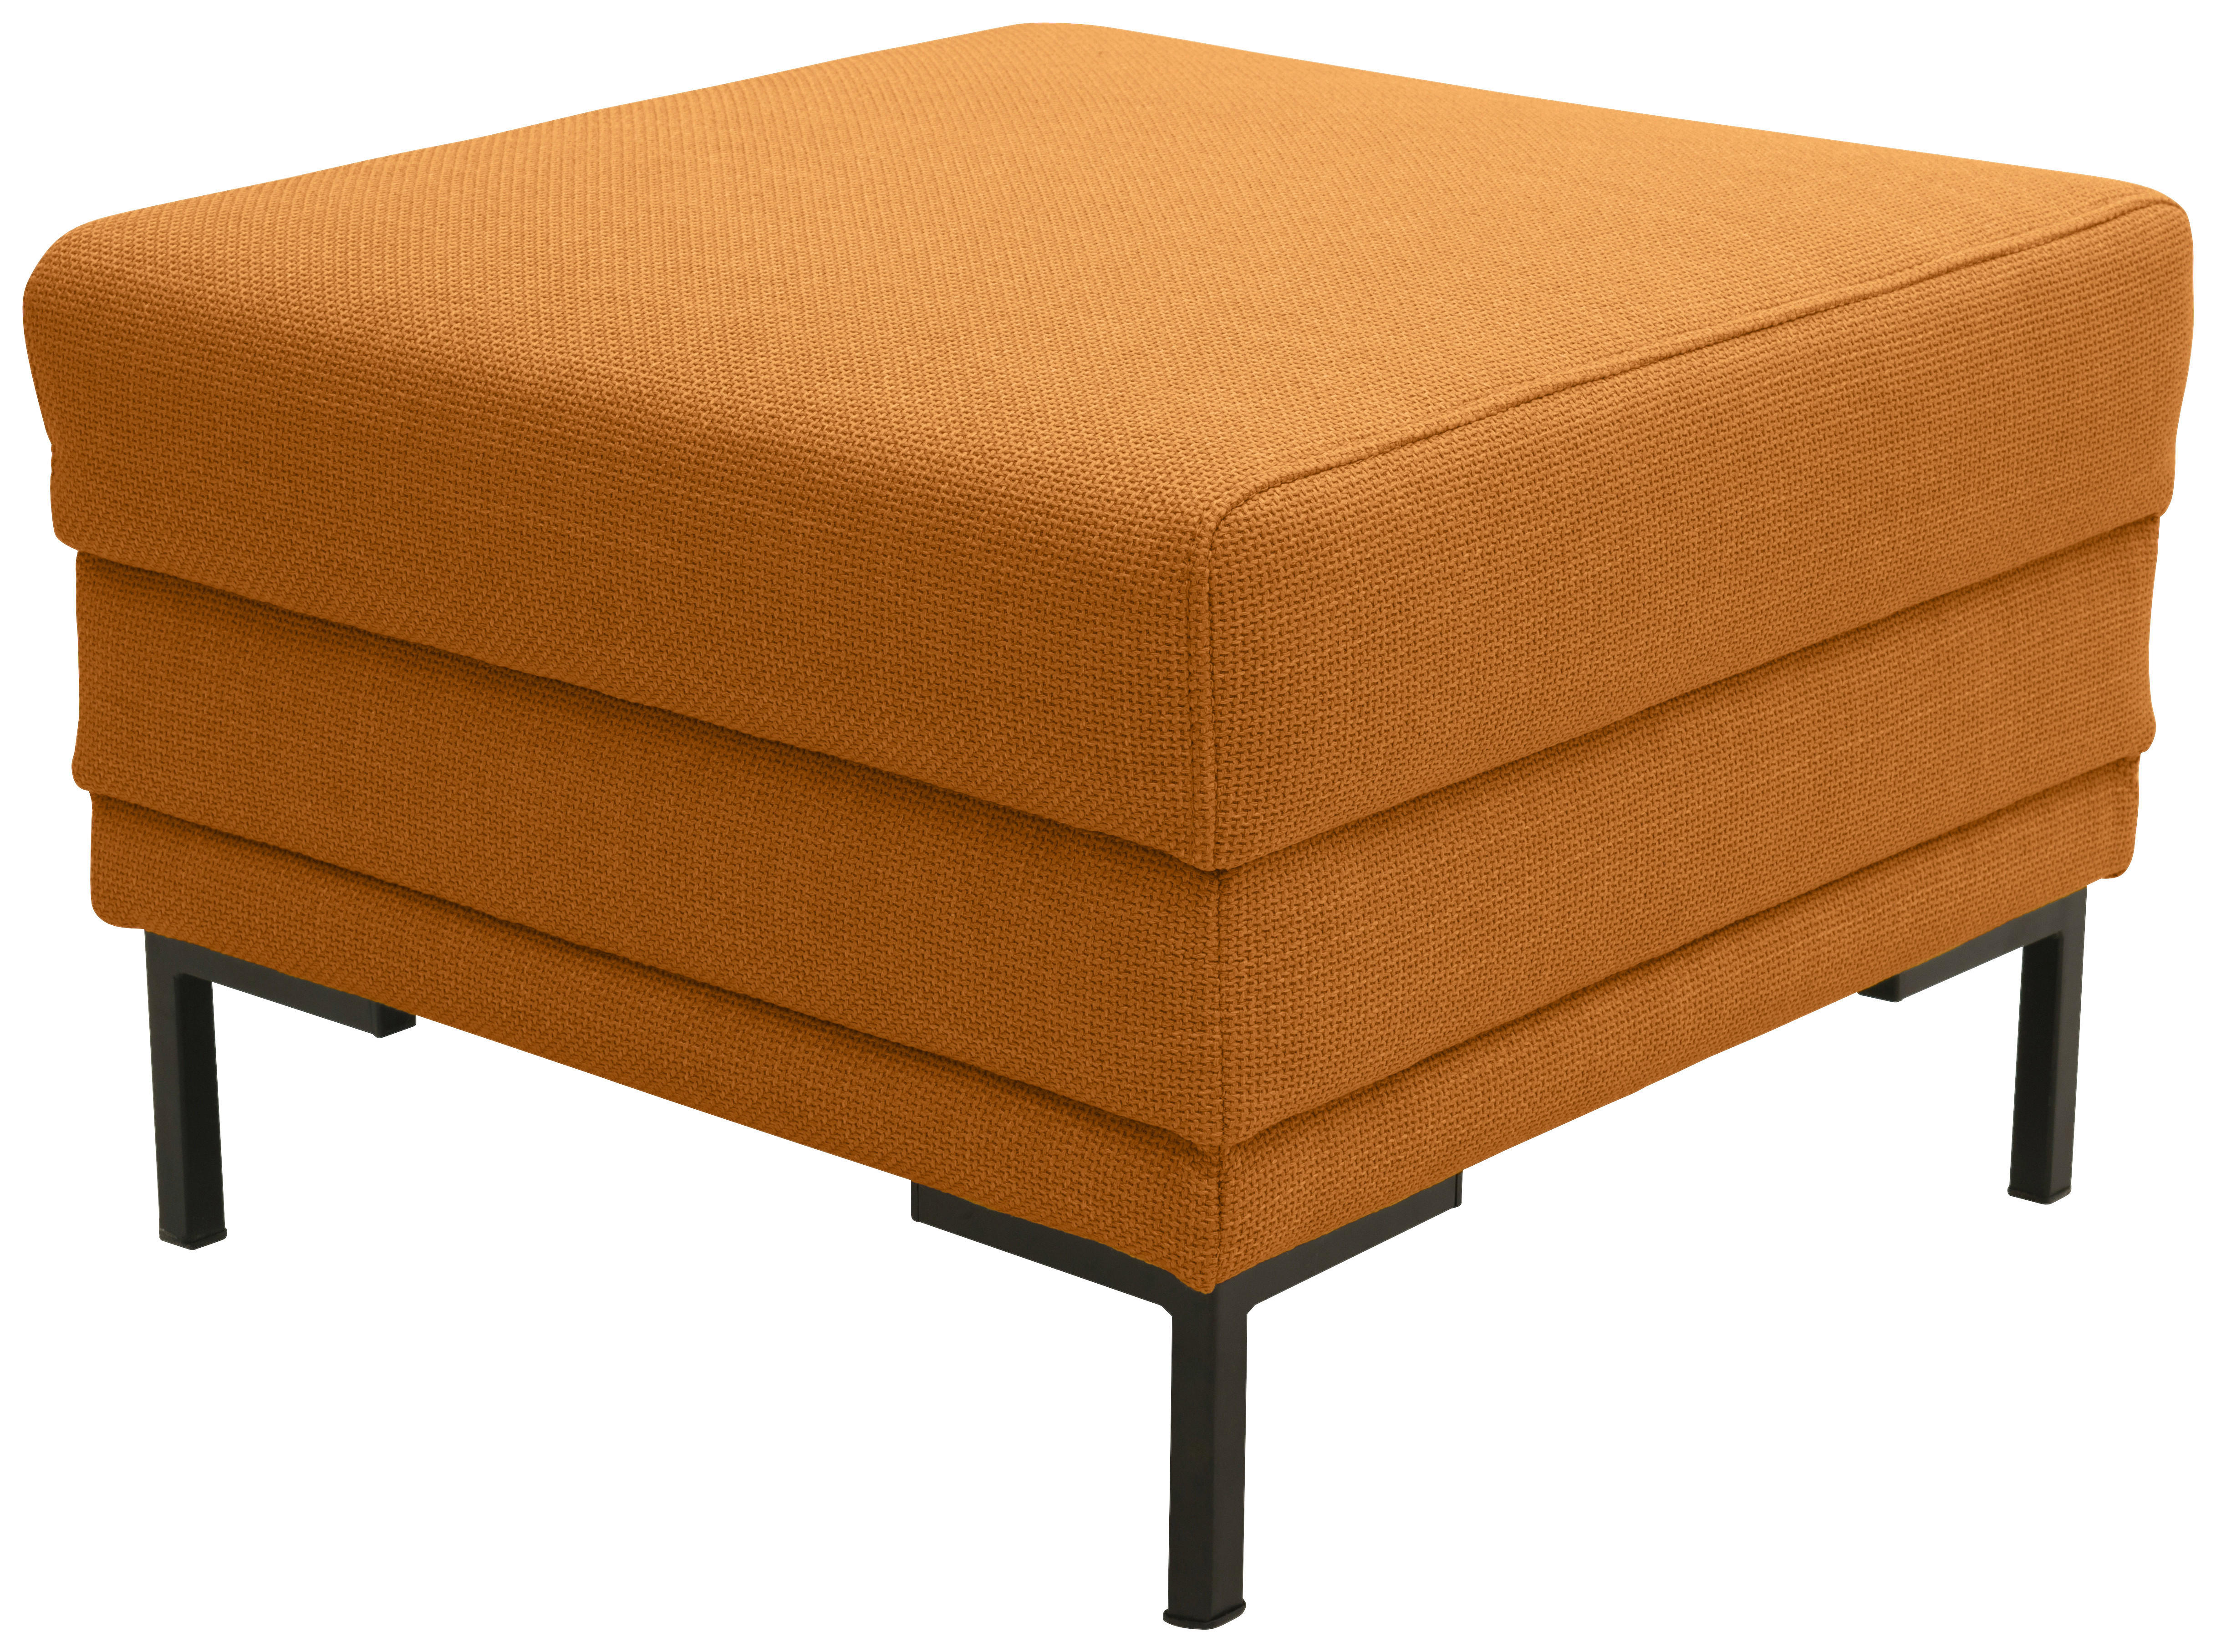 HOCKER Webstoff Orange  - Schwarz/Orange, Design, Textil/Metall (62/45/62cm) - LOOKS by W.Joop